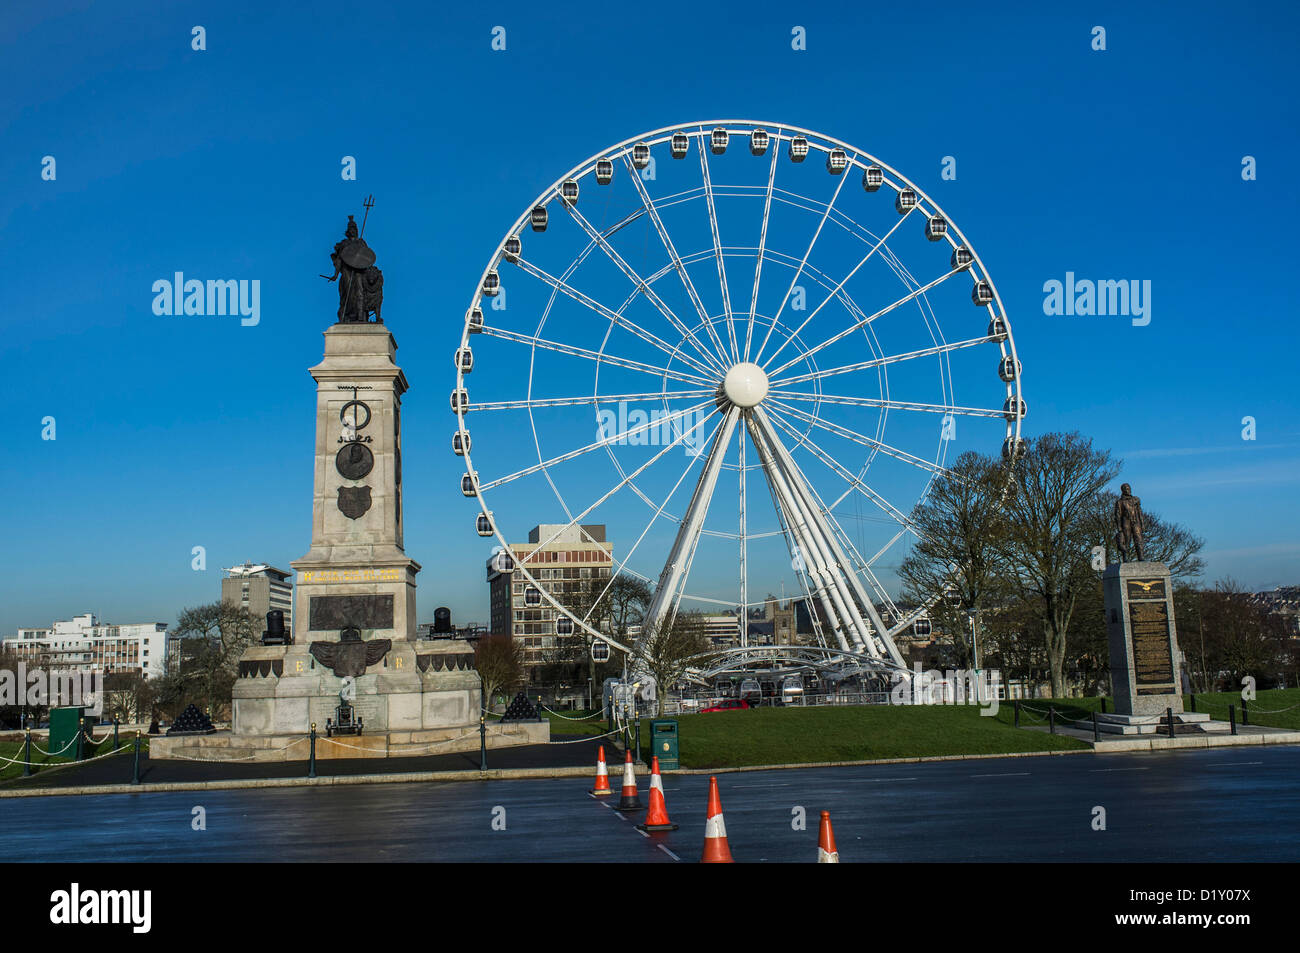 La roue Ferris flanquée de 2 monuments commémoratifs - le Mémorial national Armada sur la gauche de l'Airforce royale sur la droite. Le Hoe, Plymouth, Devon. ROYAUME-UNI Banque D'Images